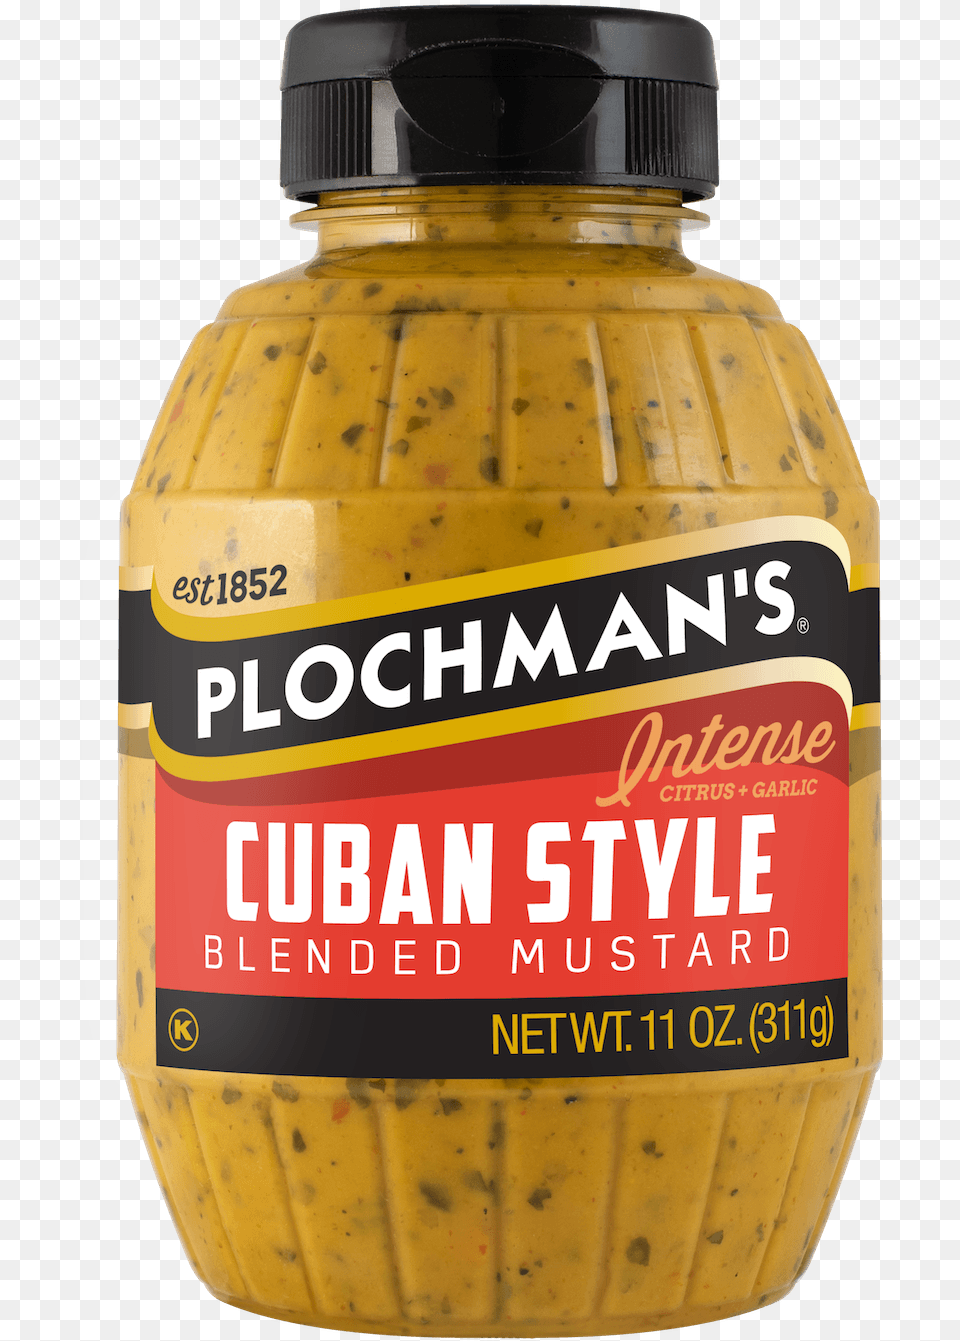 Plochman S Cuban Mustard In 11oz Barrel Bottle Bottle, Food, Shaker Free Png Download